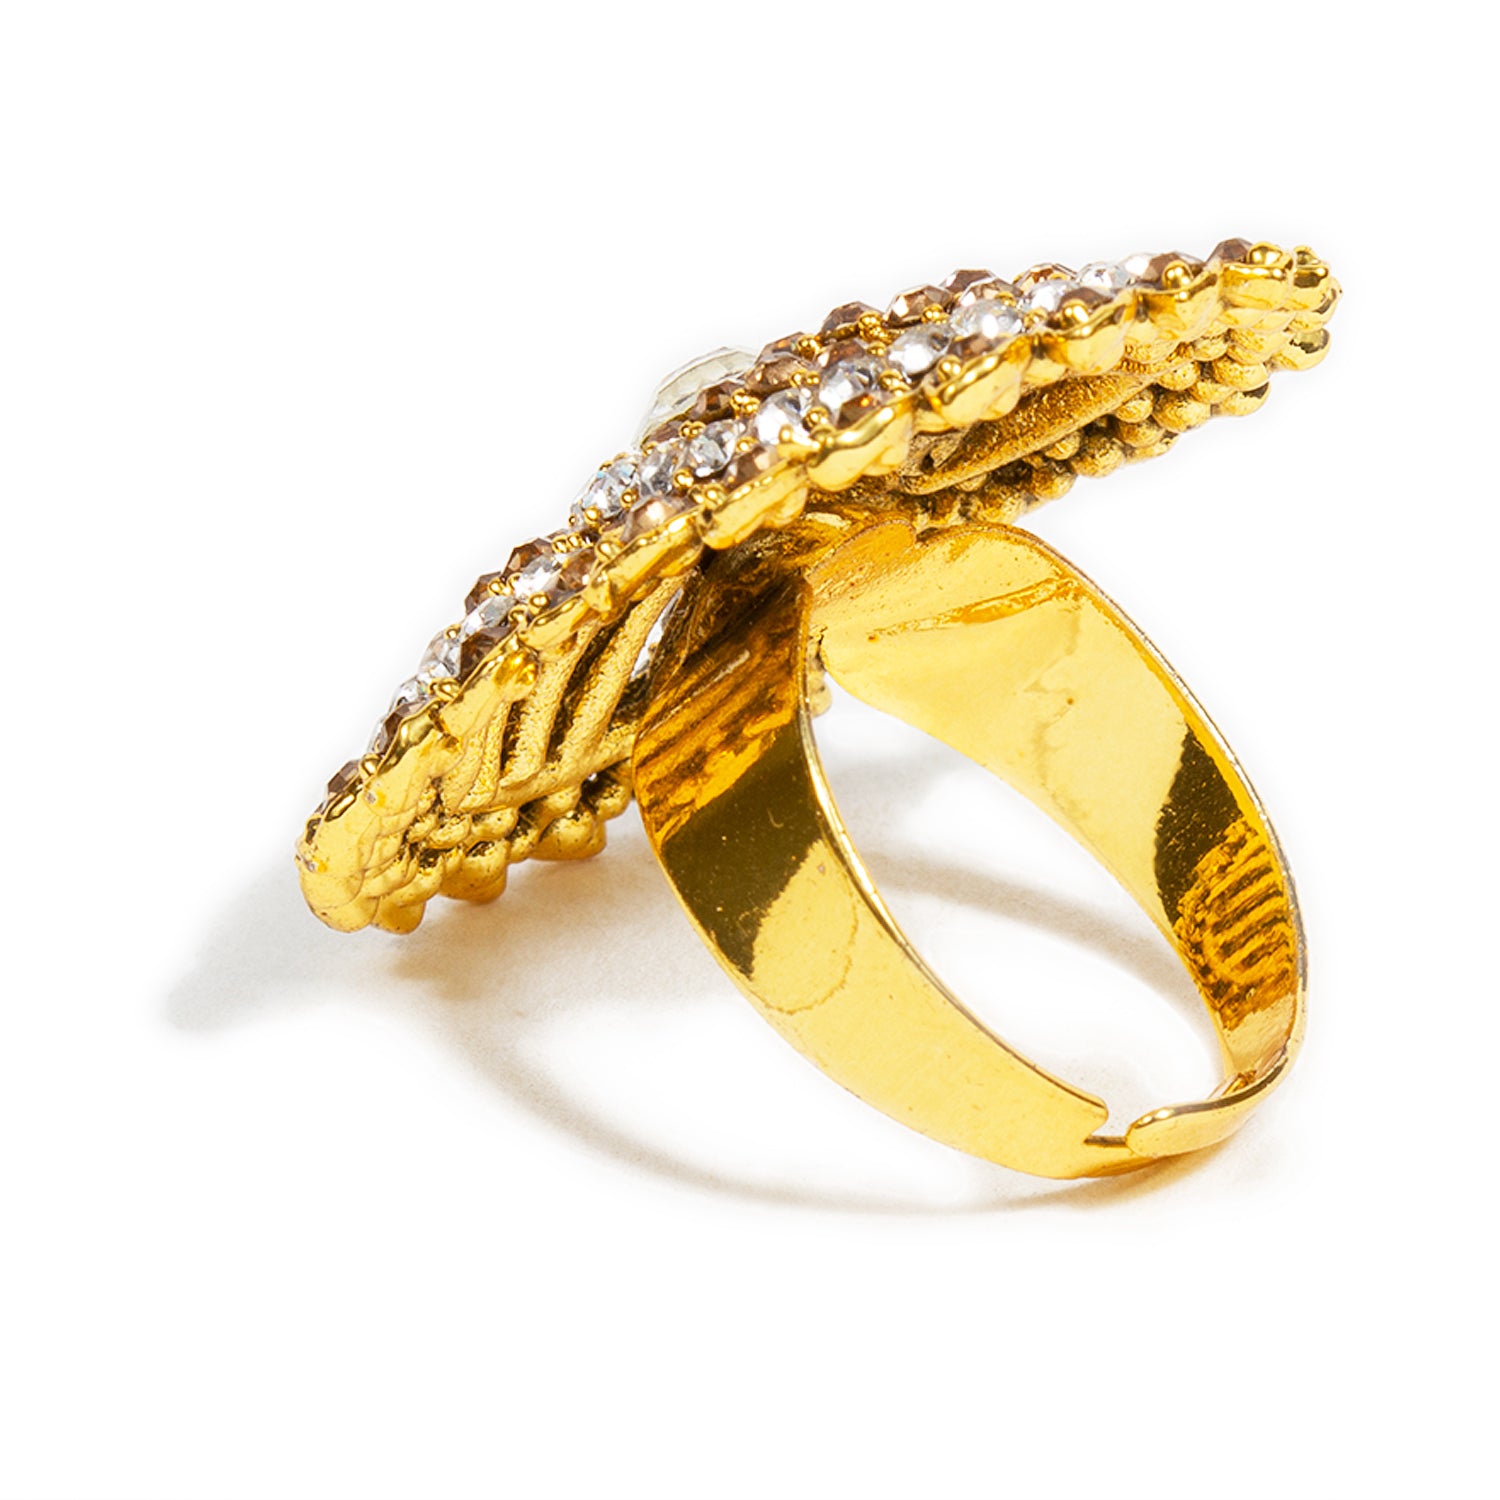 22 Carat Gold Ring UK | Shop Unique Gold Rings | Purejewels Uk